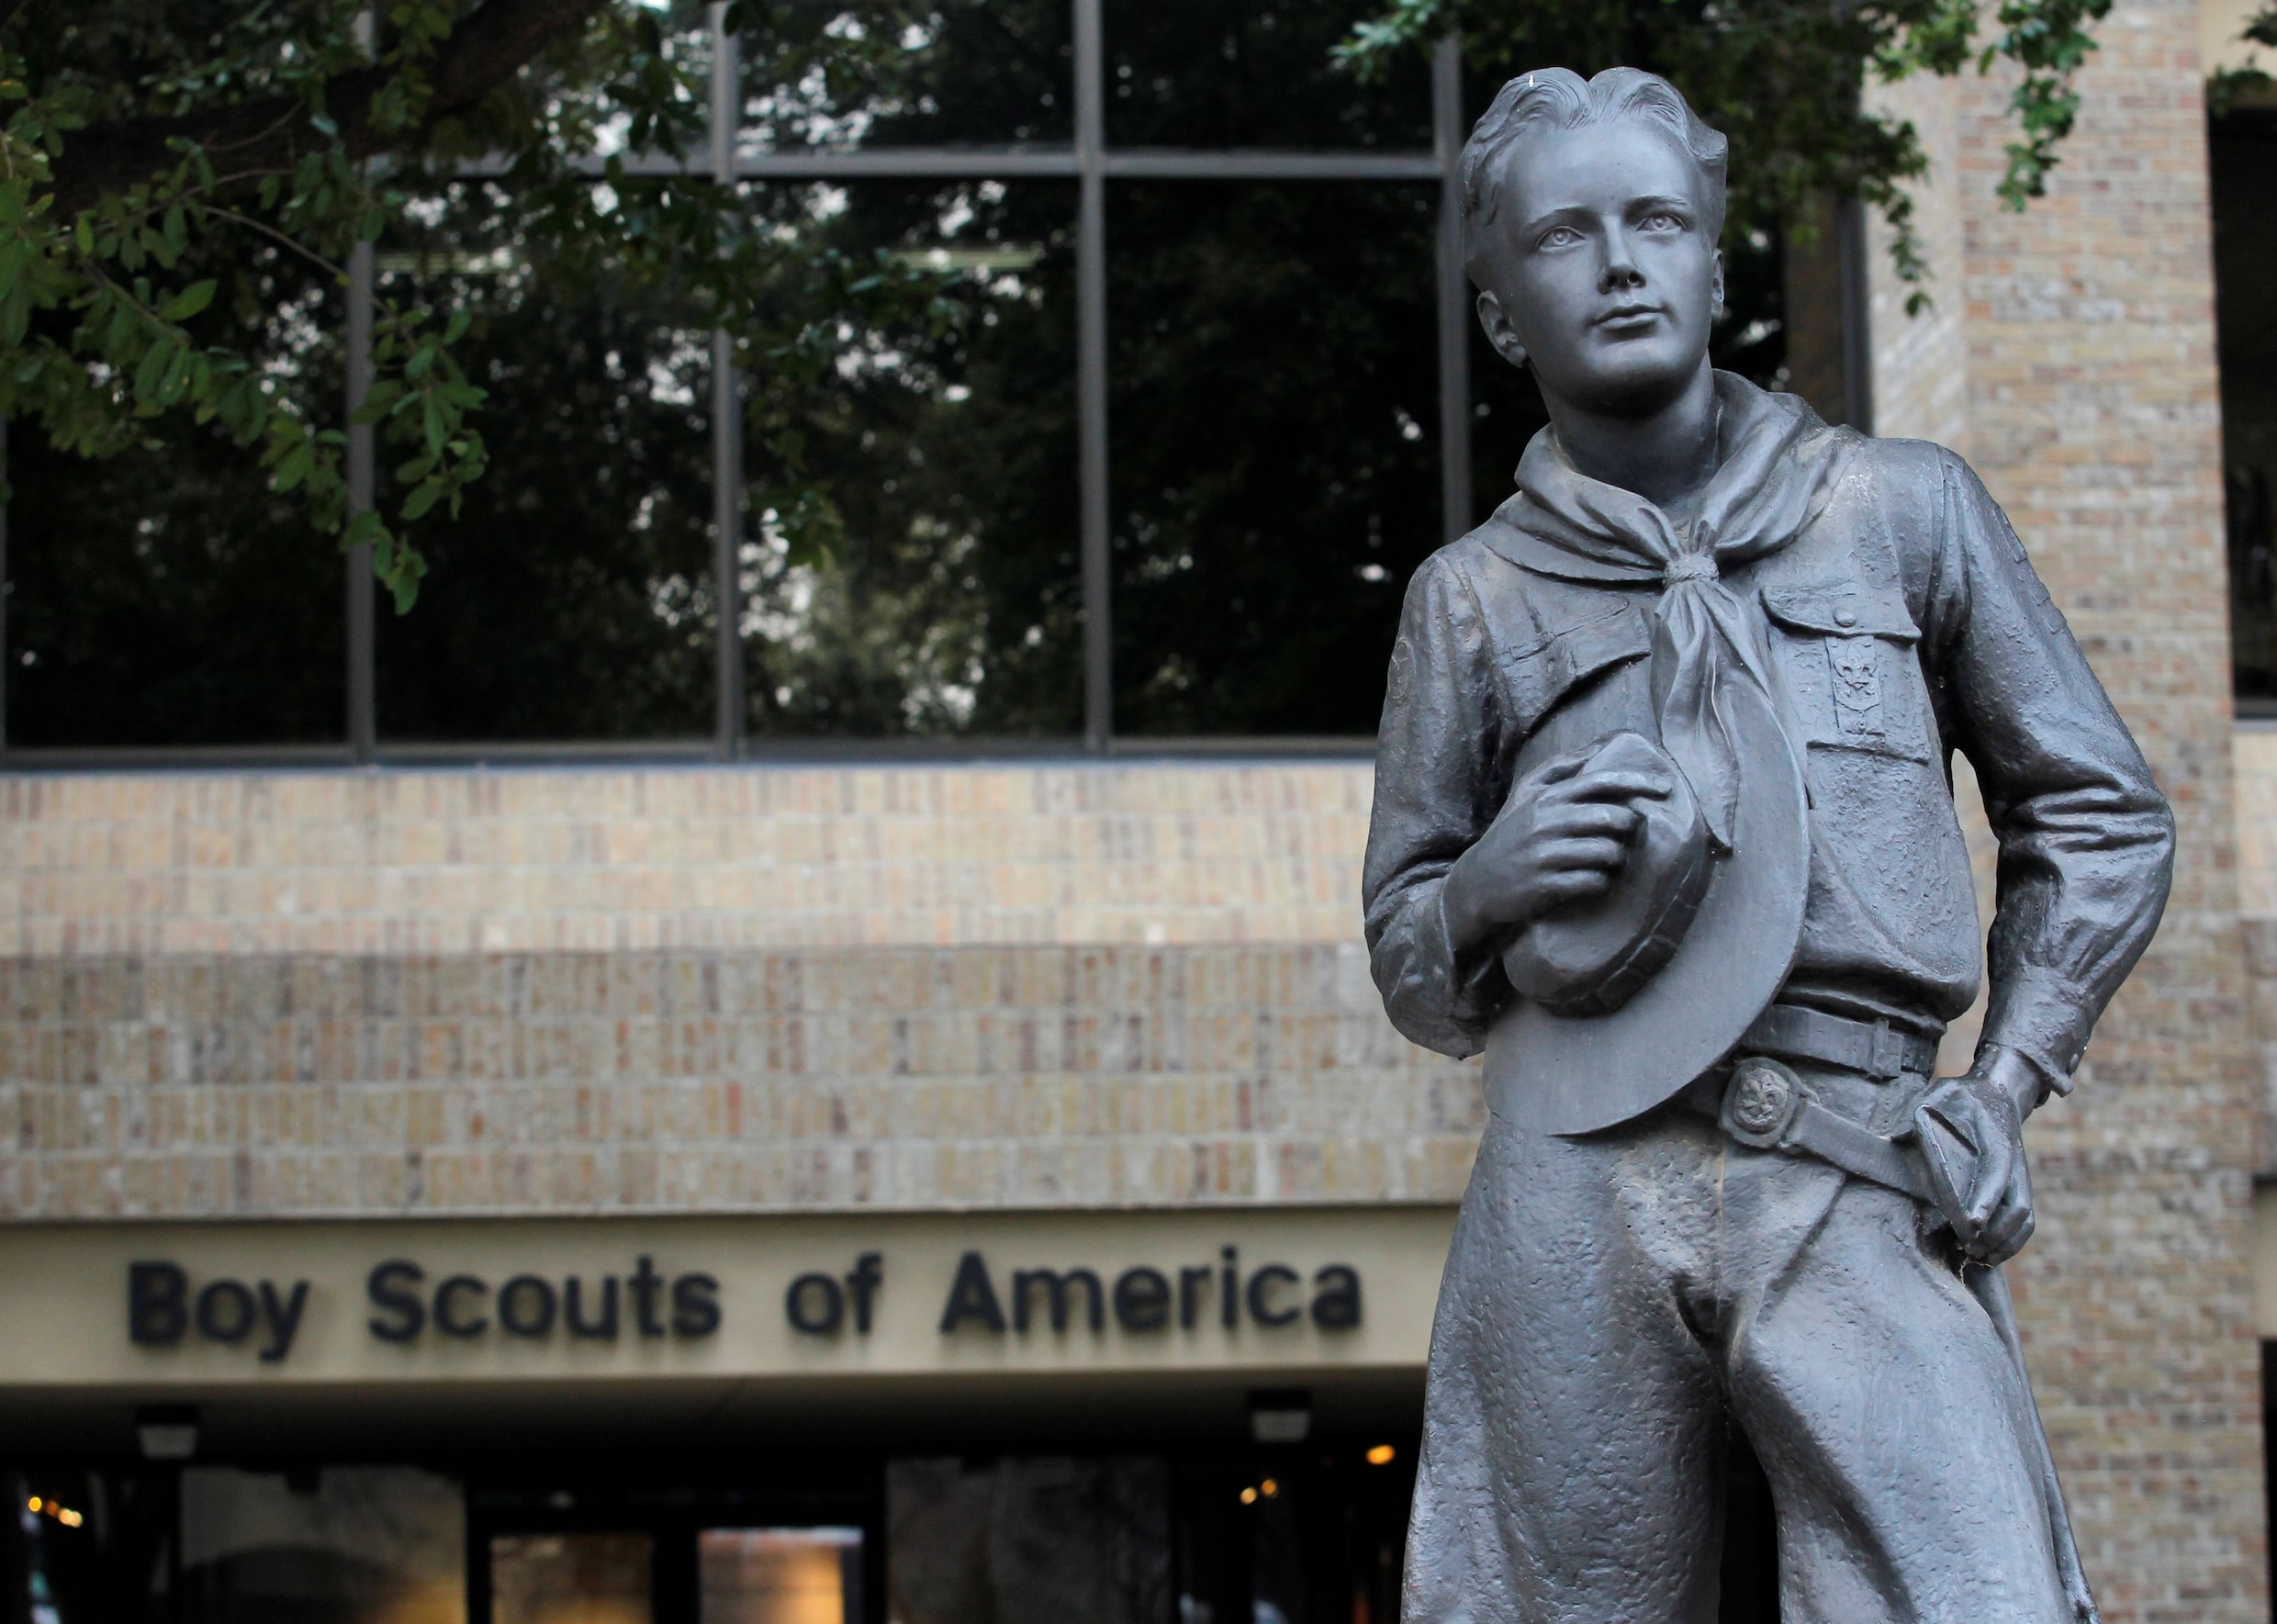 Boy Scouts of America vraagt bescherming aan tegen schuldeisers na honderden rechtszaken van seksueel misbruik